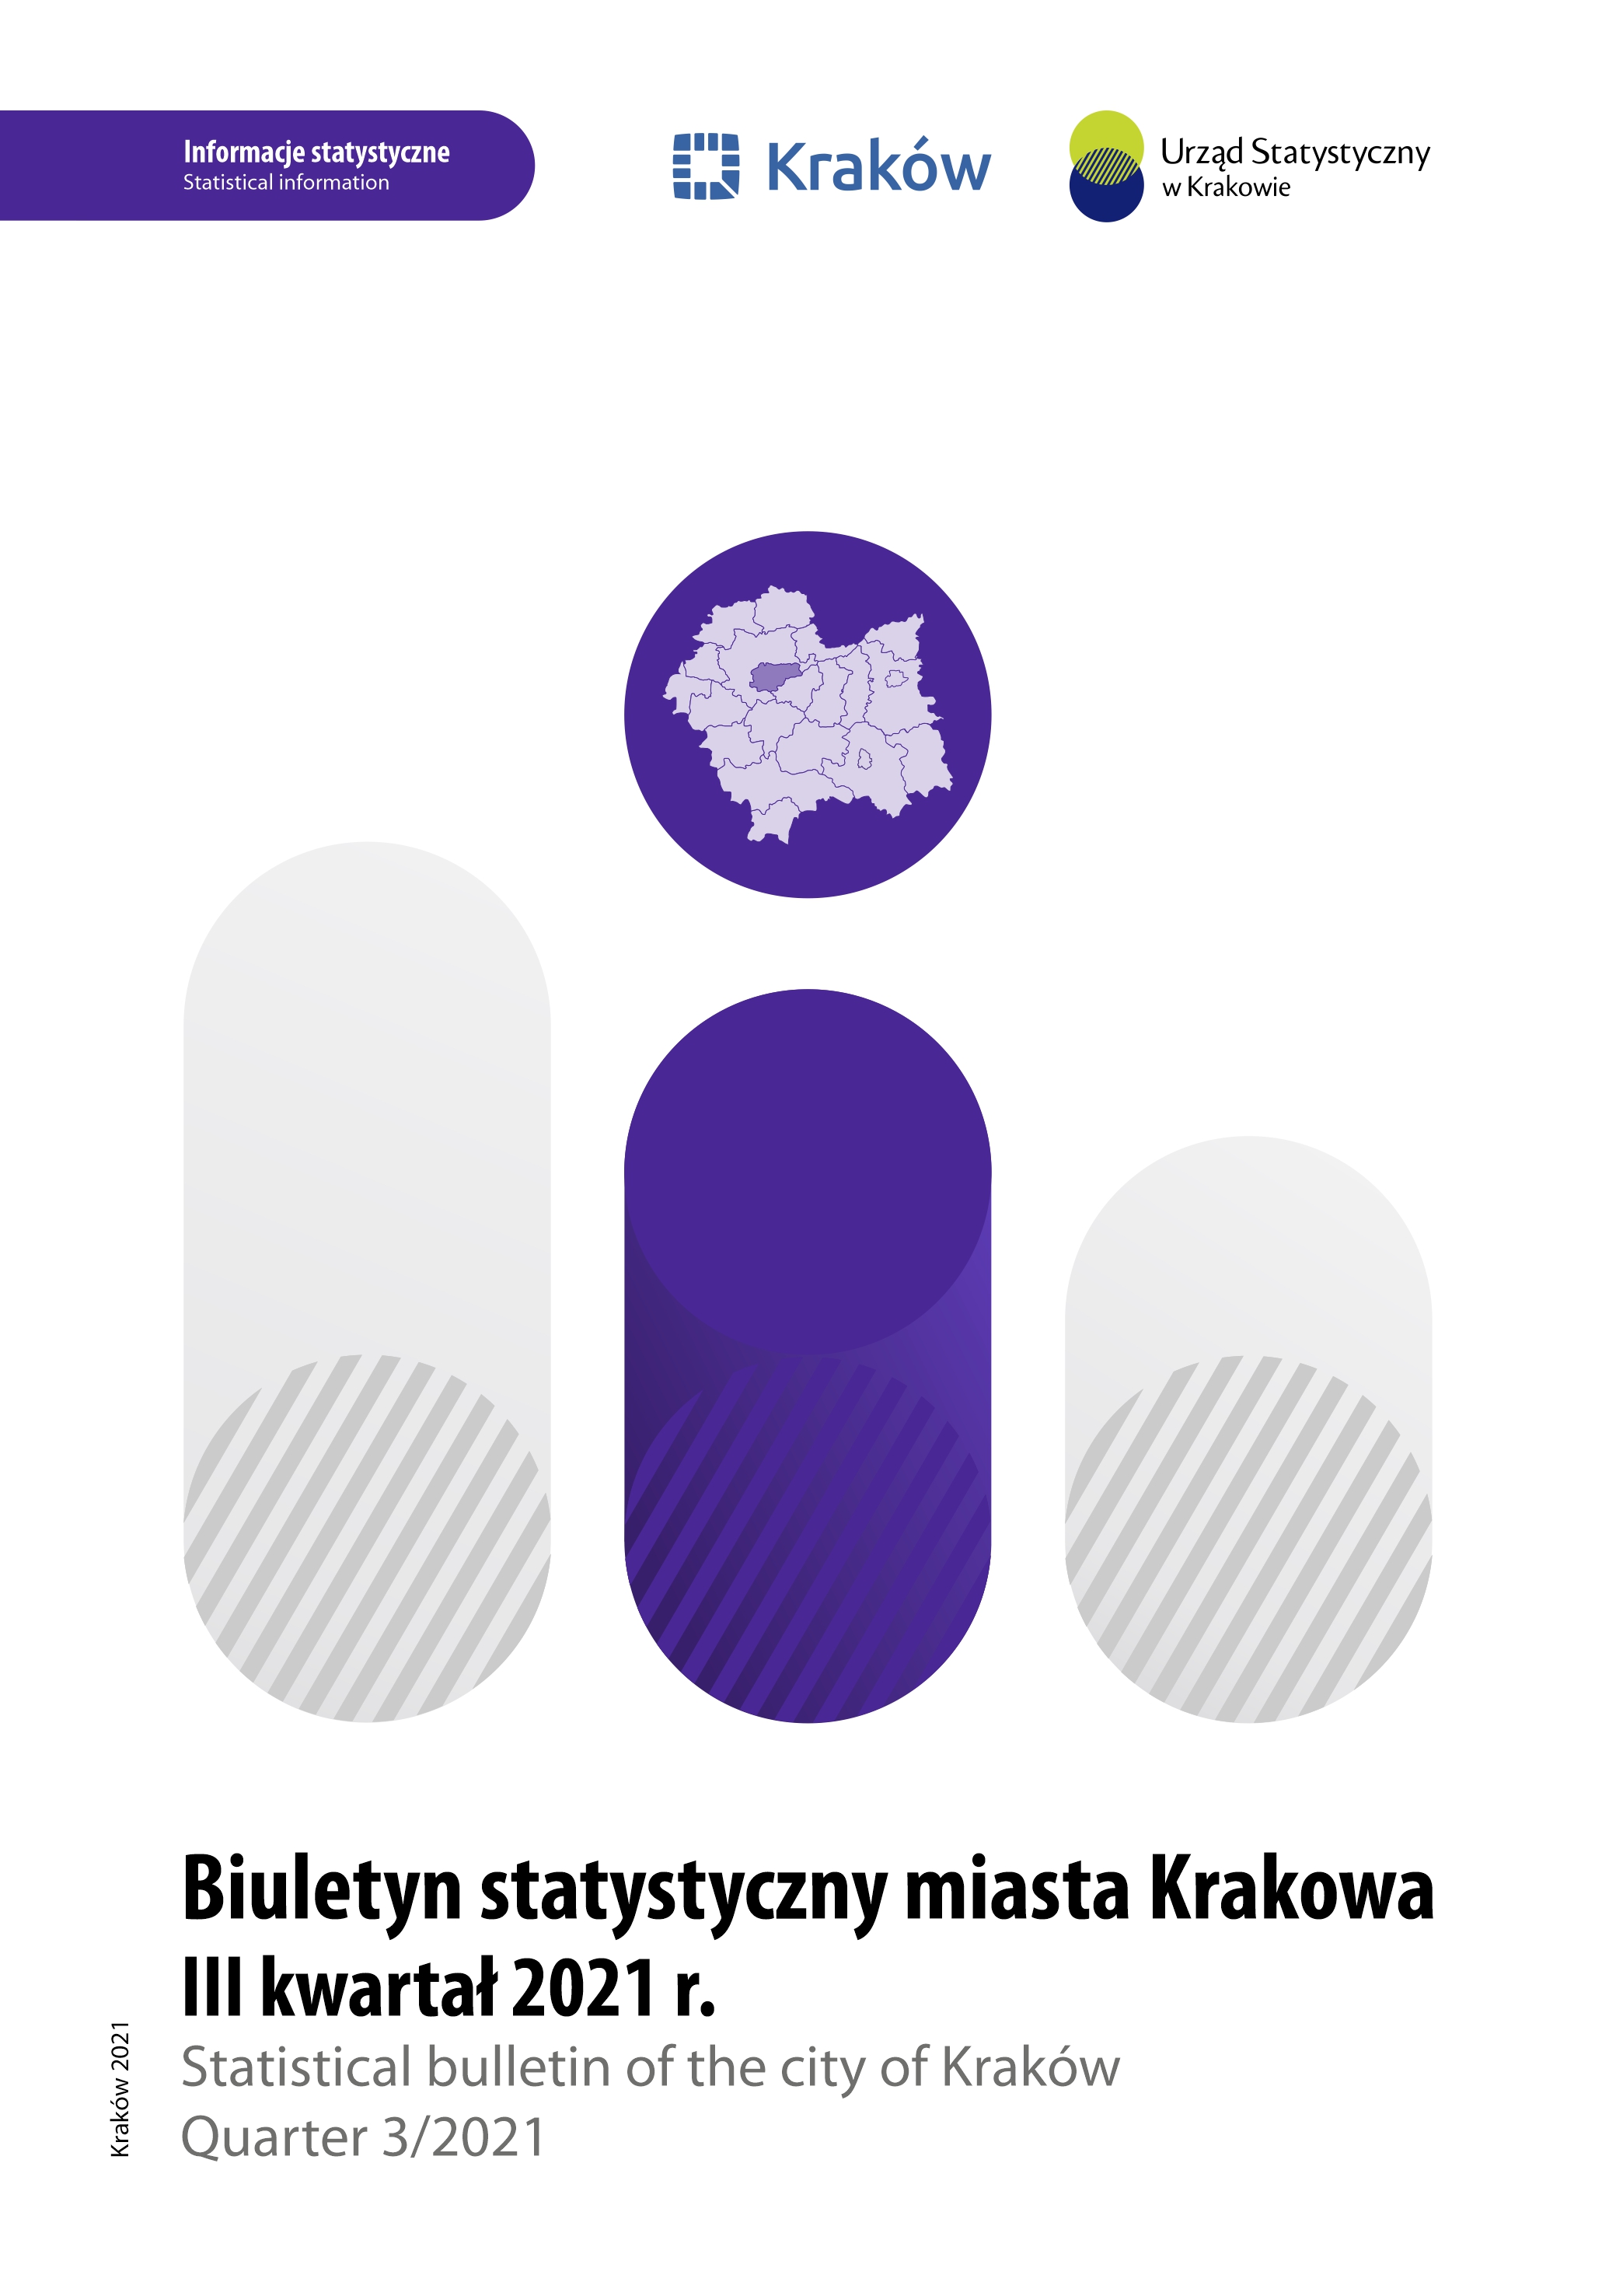 Okładka Biuletynu Statystycznego Miasta Krakowa III kwartał 2021